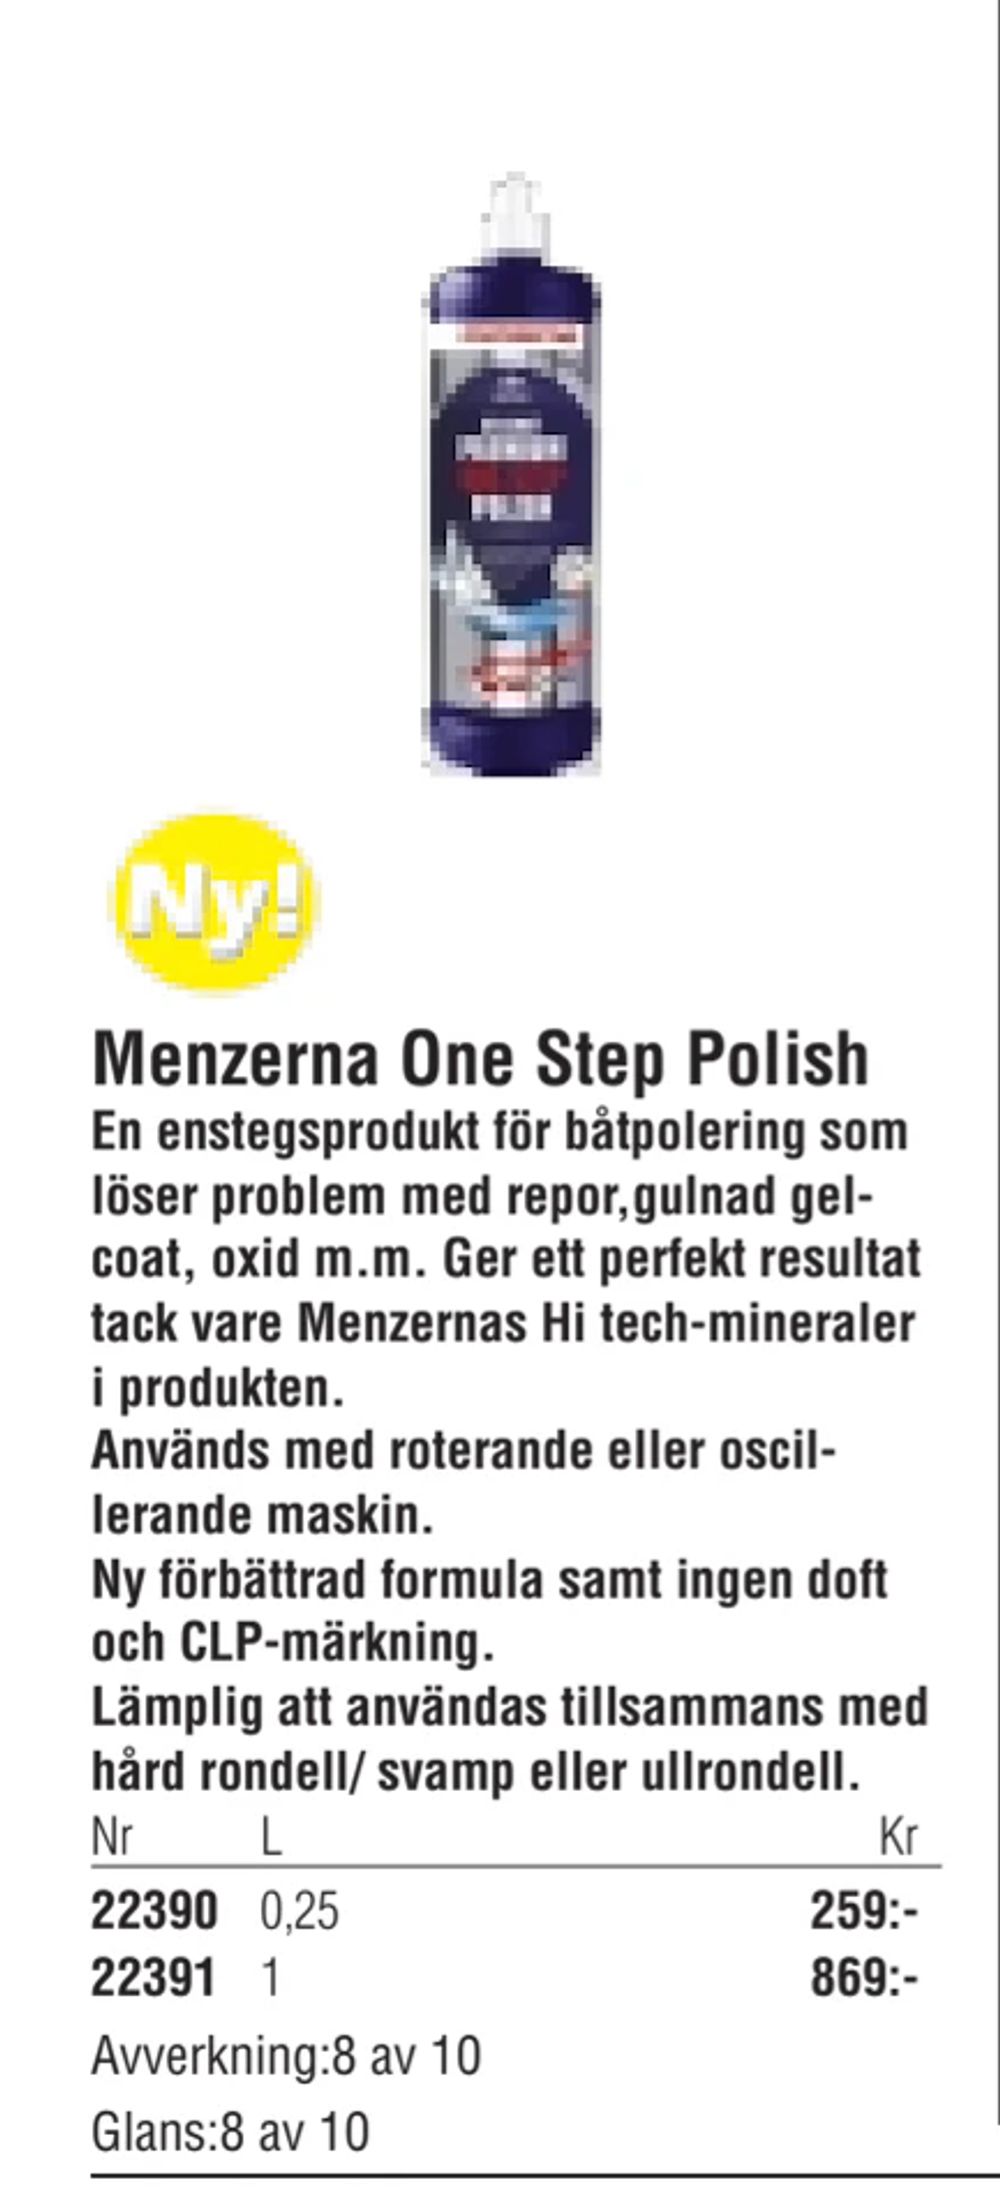 Erbjudanden på Menzerna One Step Polish från Erlandsons Brygga för 259 kr